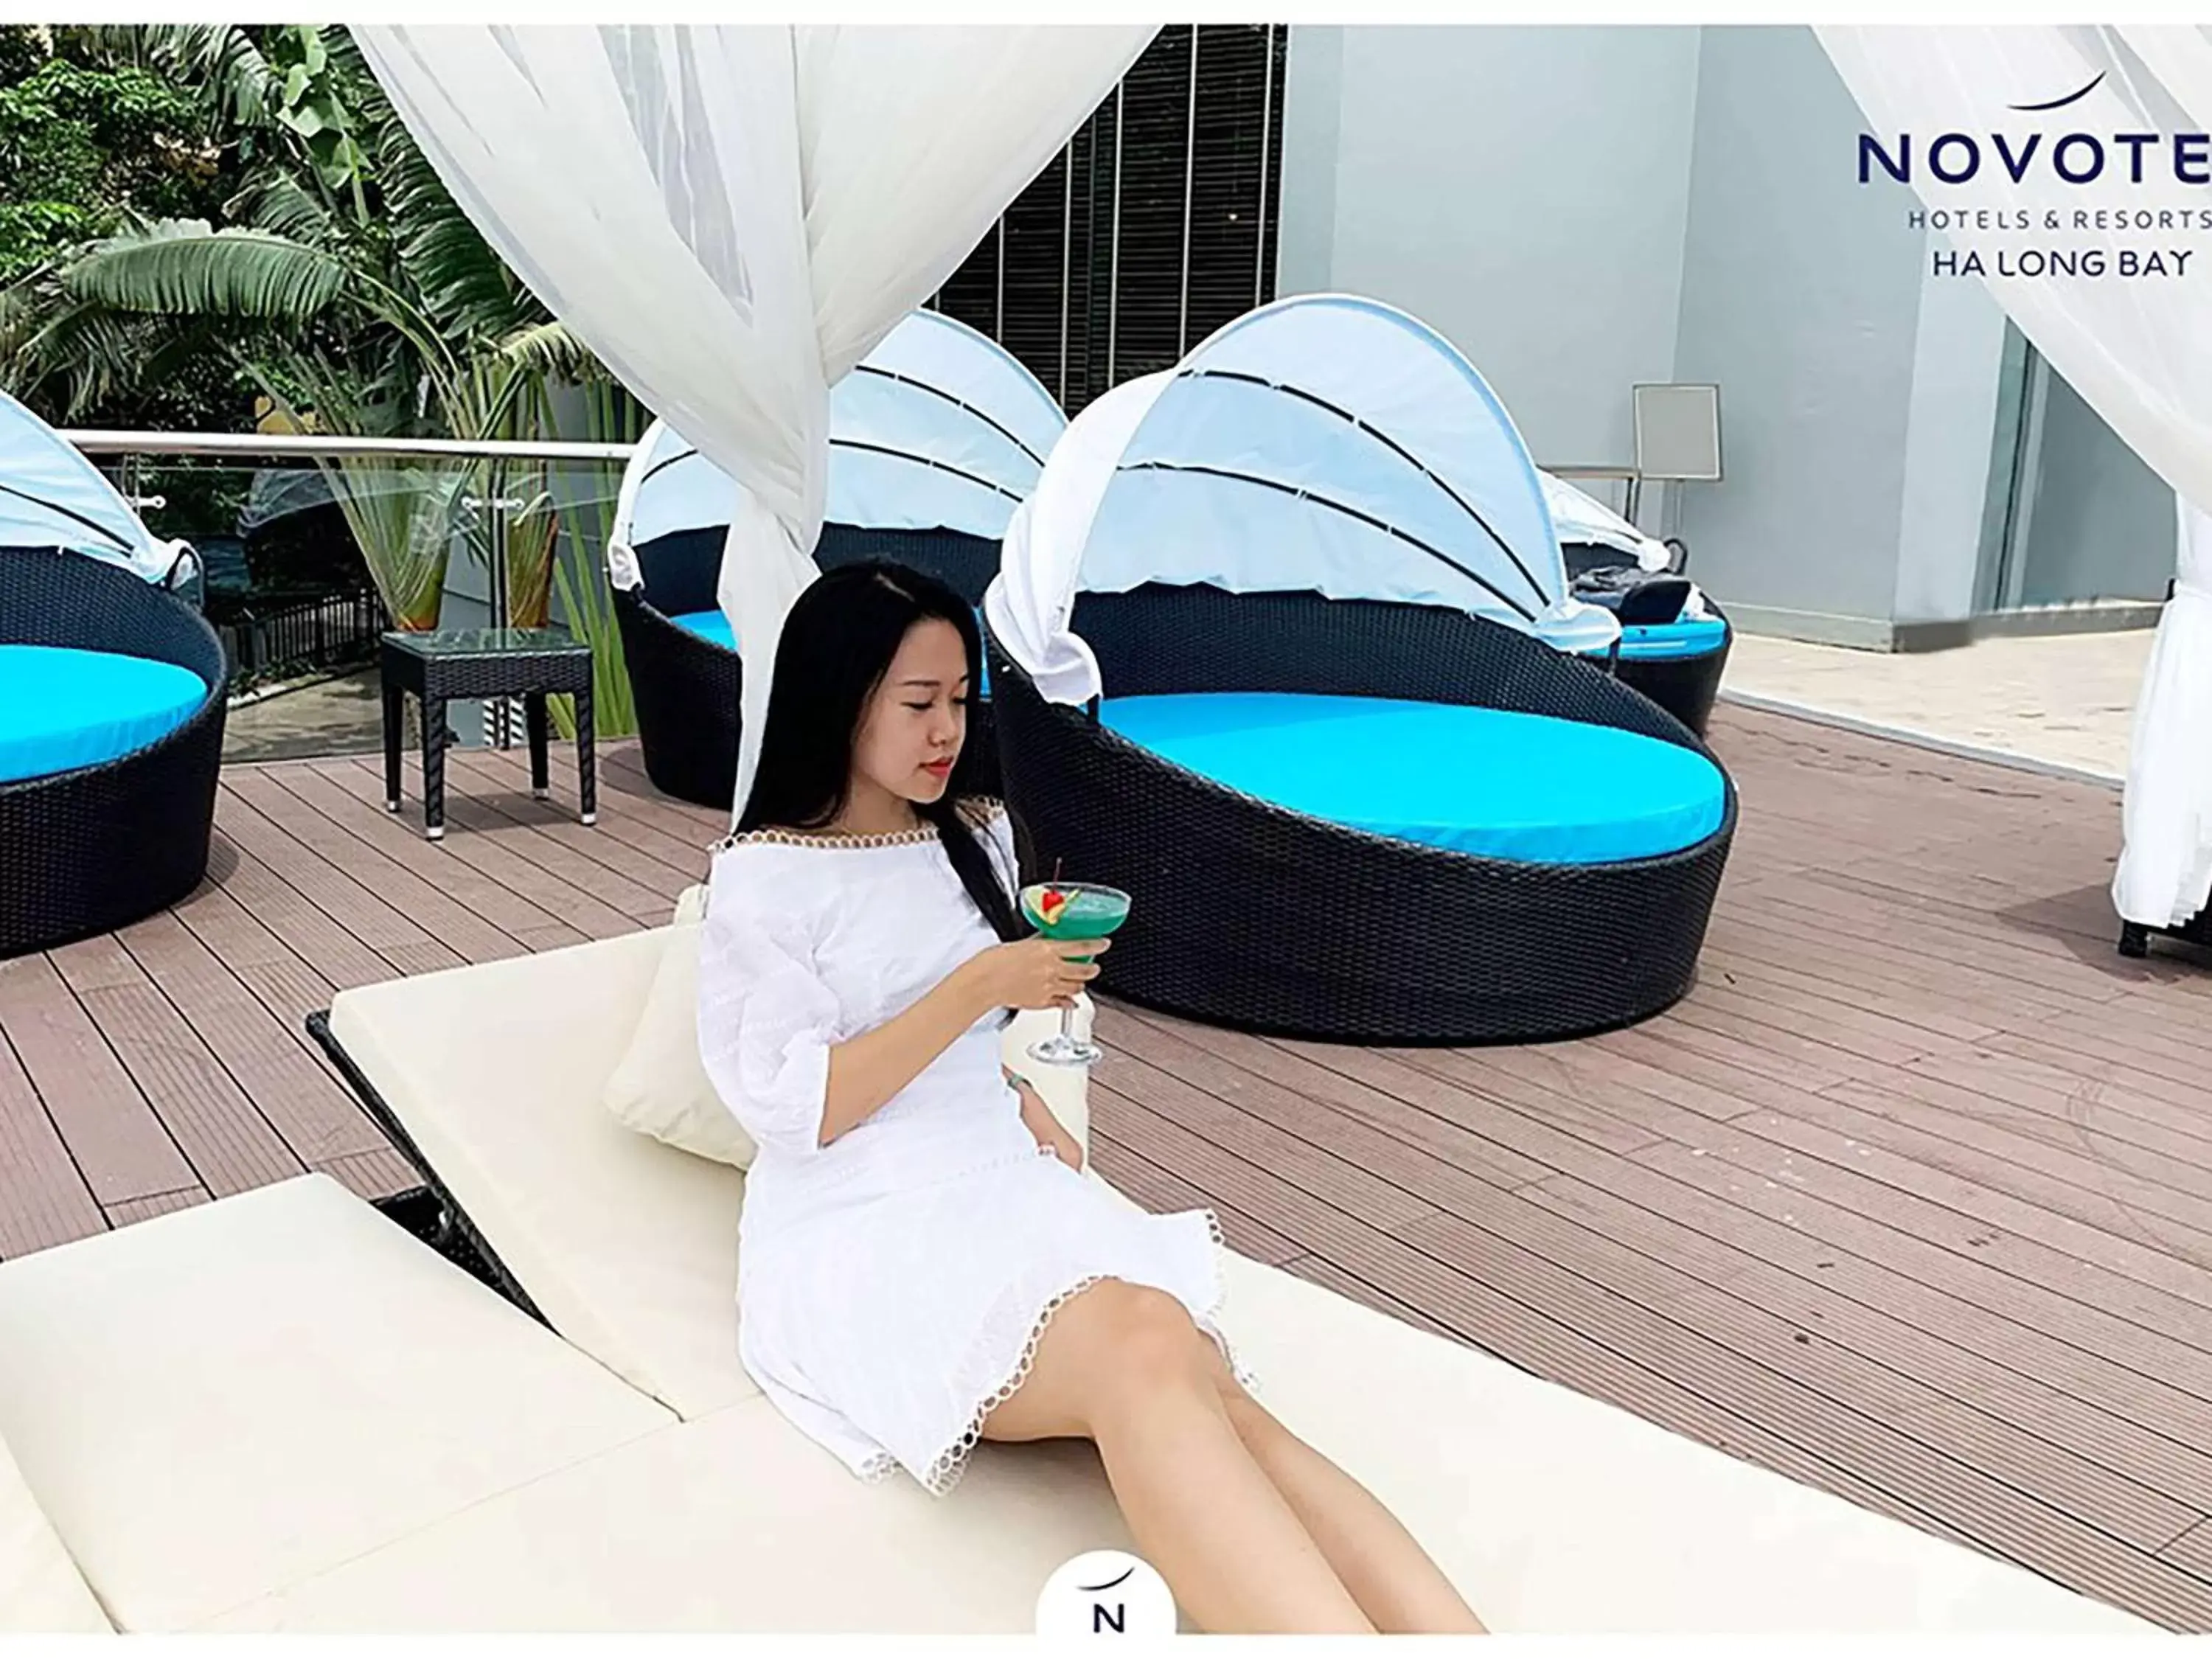 On site in Novotel Ha Long Bay Hotel